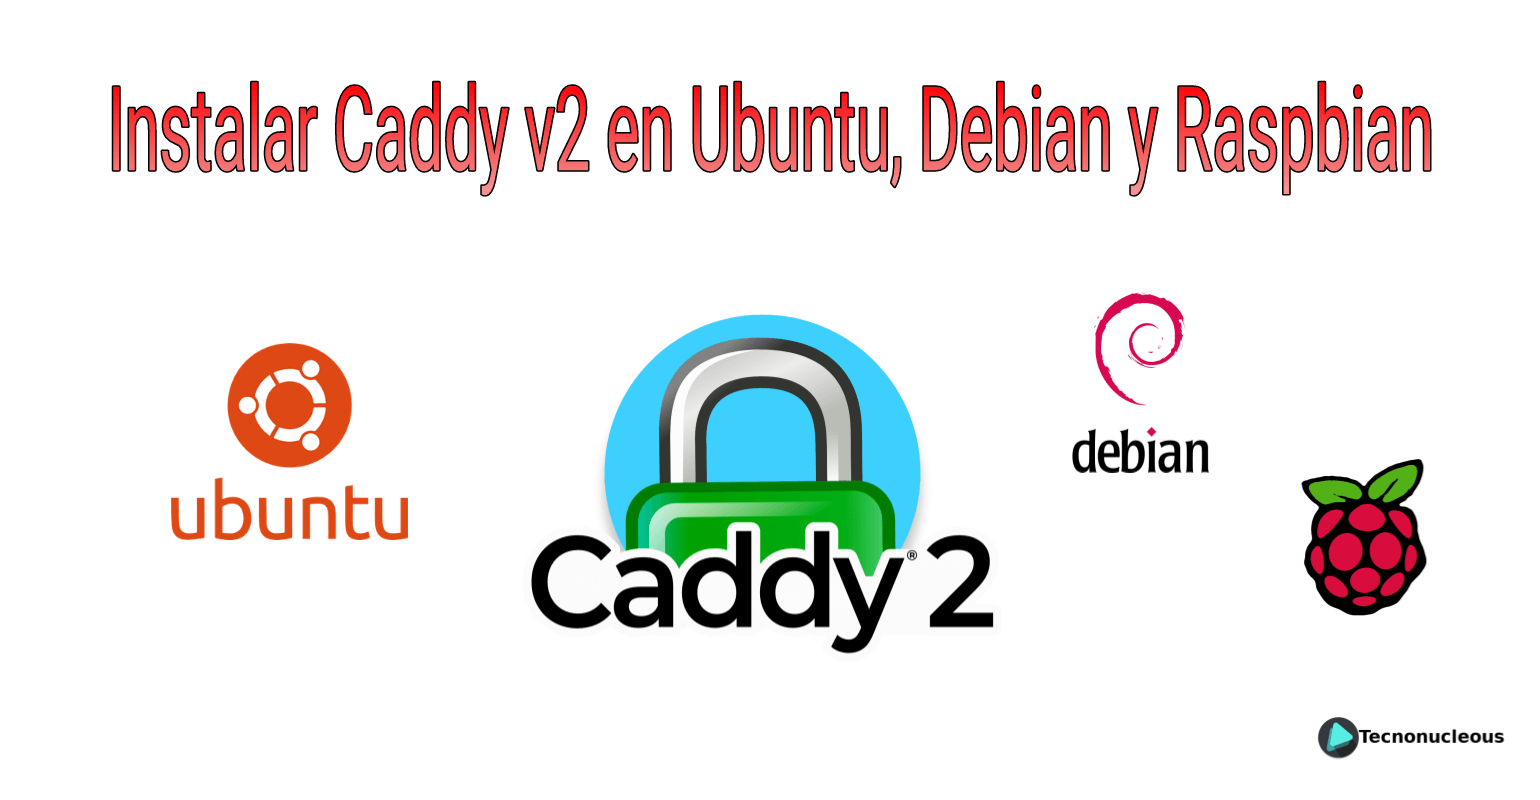 ¿Cómo instalar Caddy v2 en Ubuntu, Debian y Raspbian?